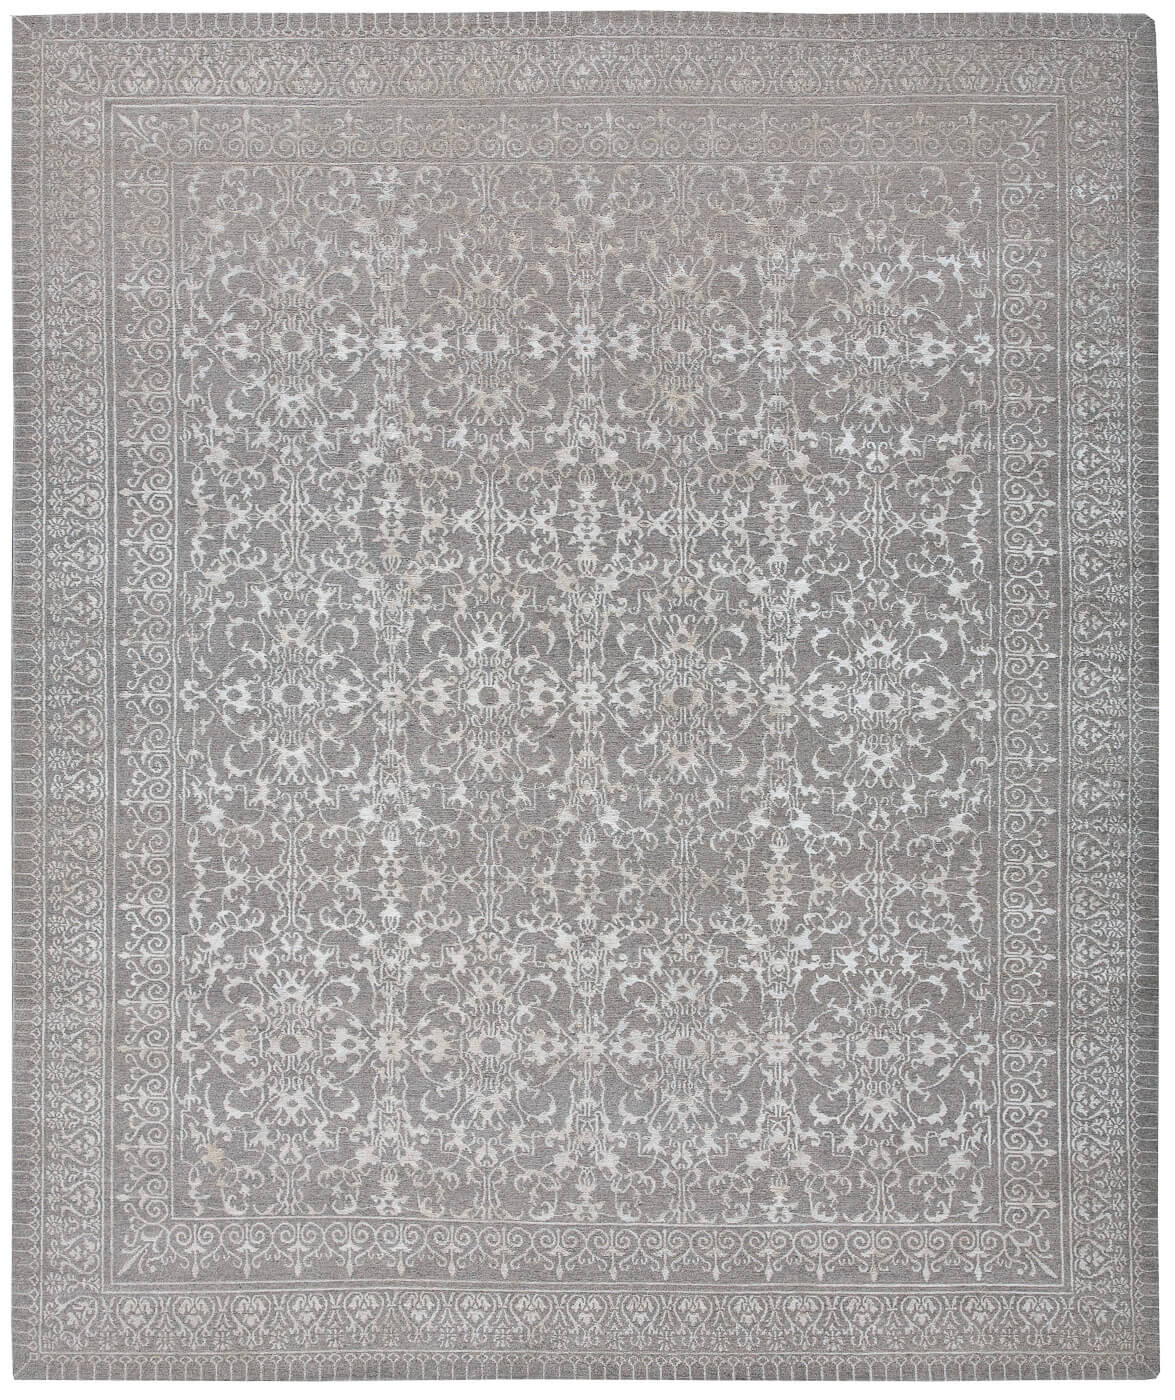 Ferrara Grey Luxury Hand-woven Rug ☞ Size: 250 x 300 cm